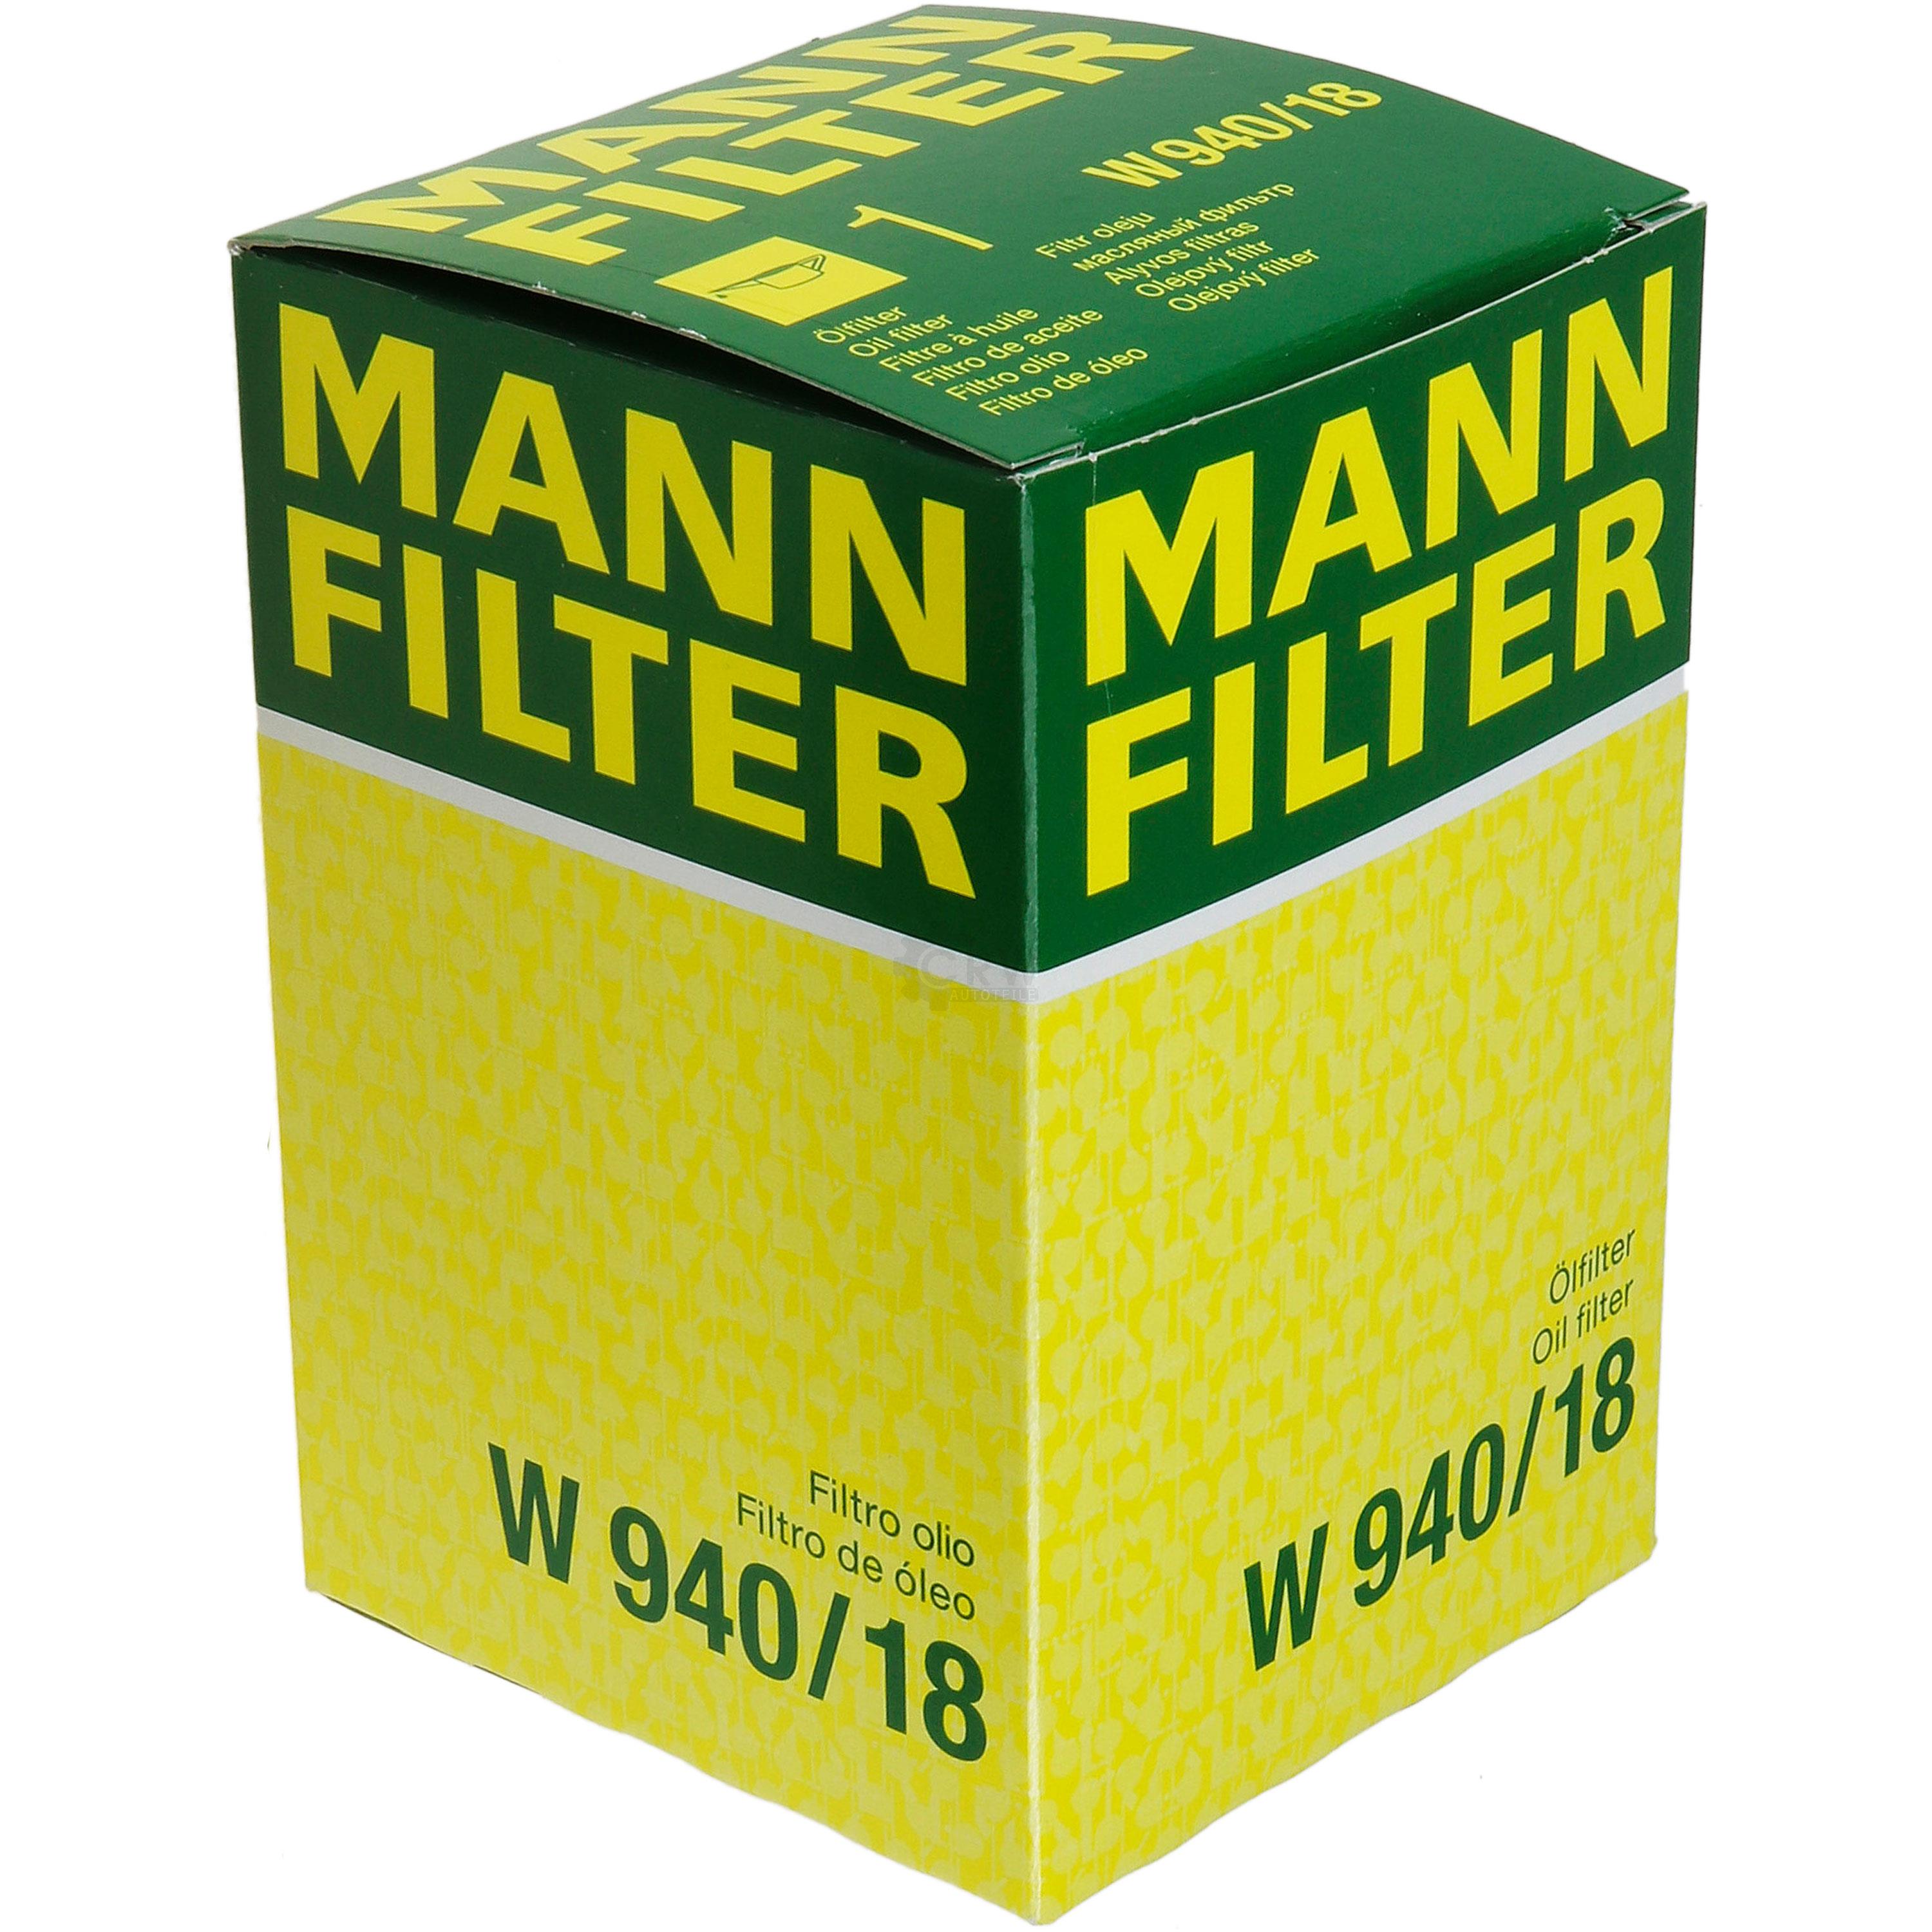 MANN-FILTER ÖlFILTER für Arbeitshydraulik W 940/18